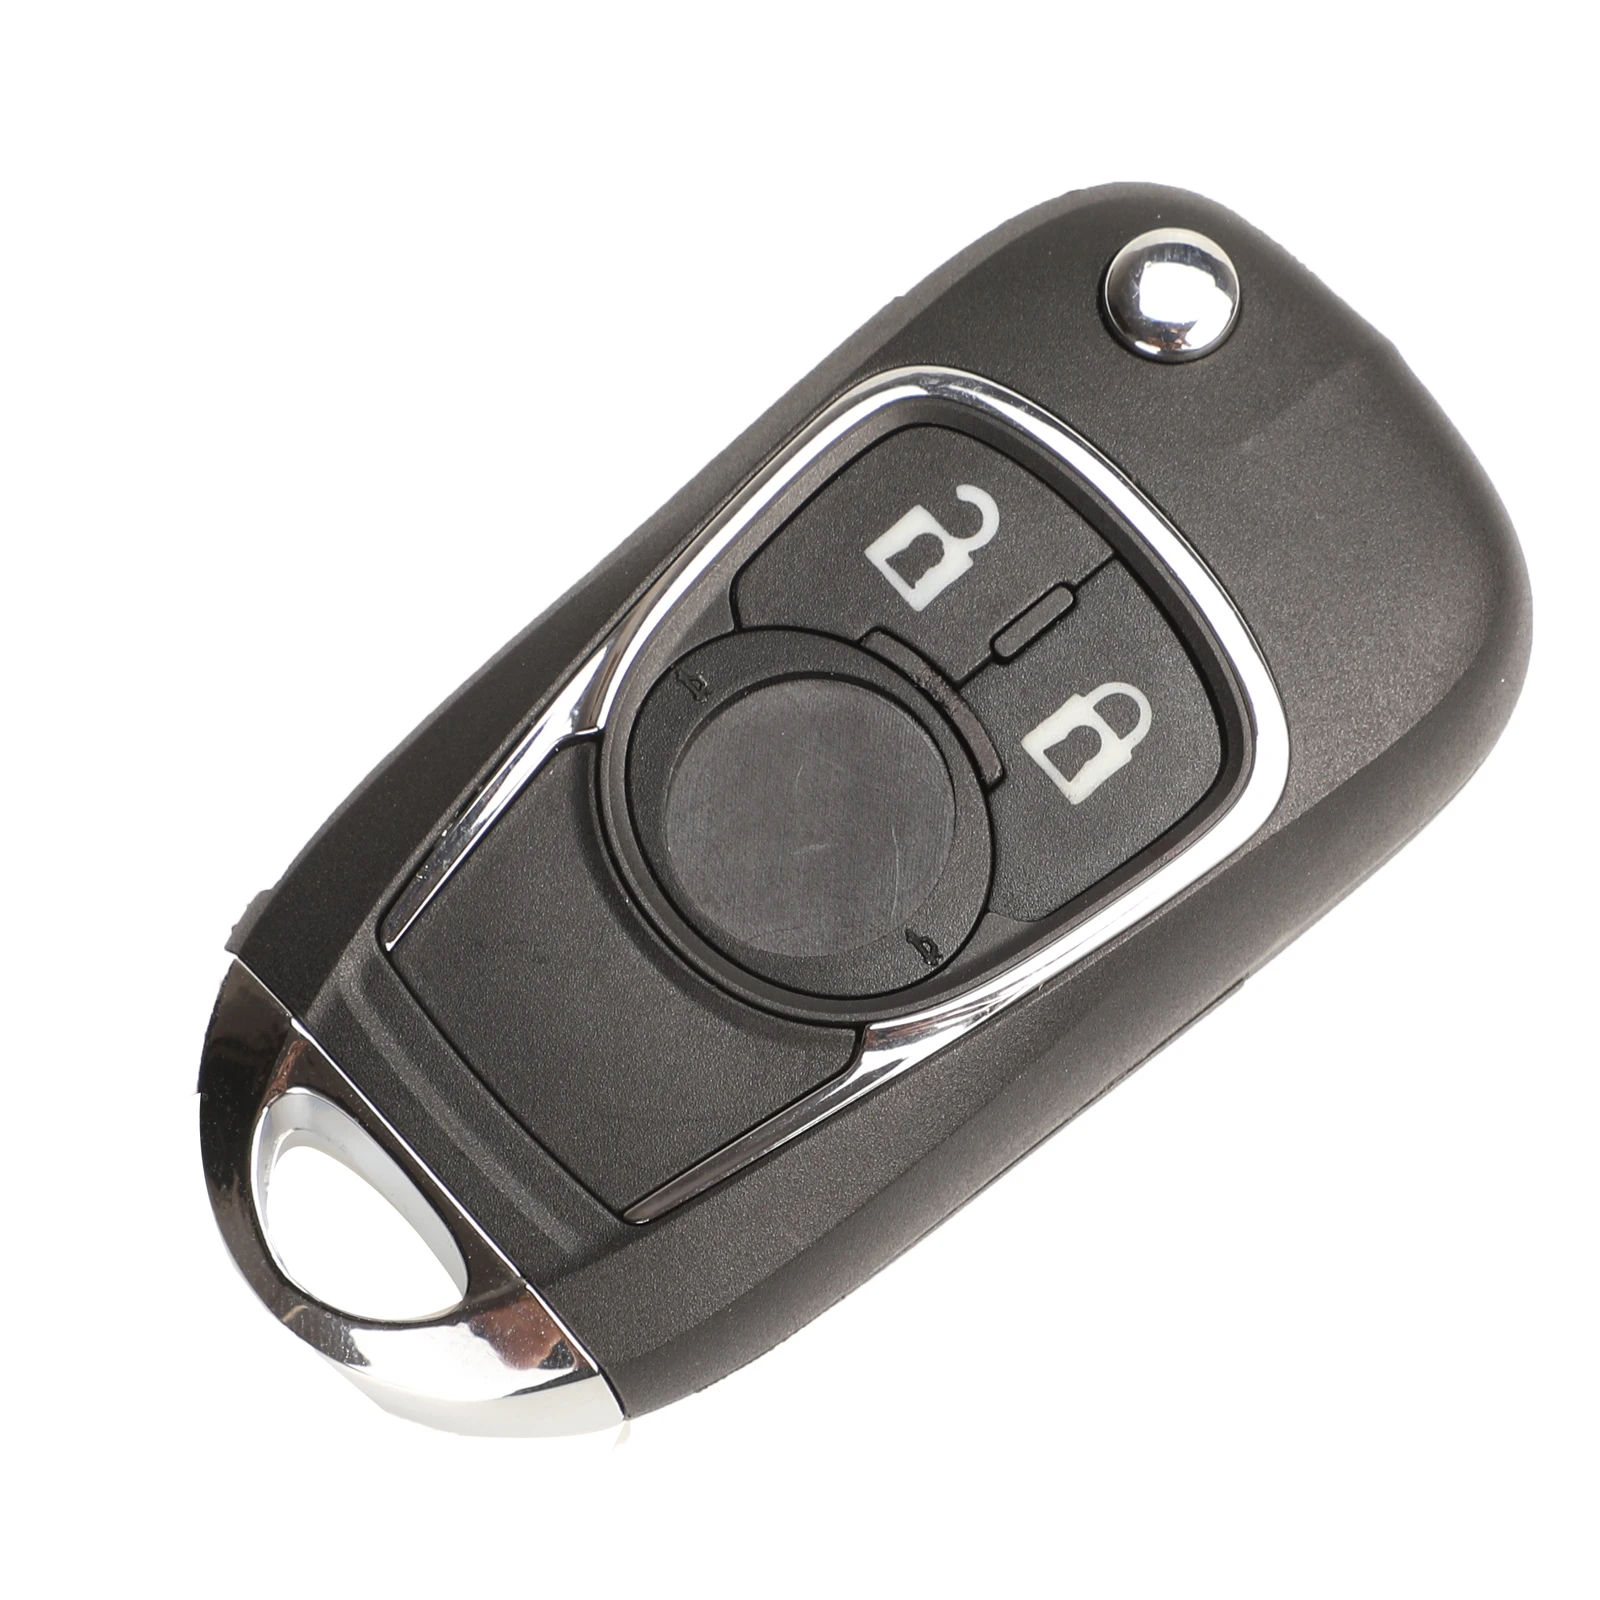 Jingyuqin дистанционный Автомобильный ключ для Chevrolet Cruze Buick Королевский бис Лакросс GL8 для OPEL Insignia Astra J Zafira C - Количество кнопок: 2 Button